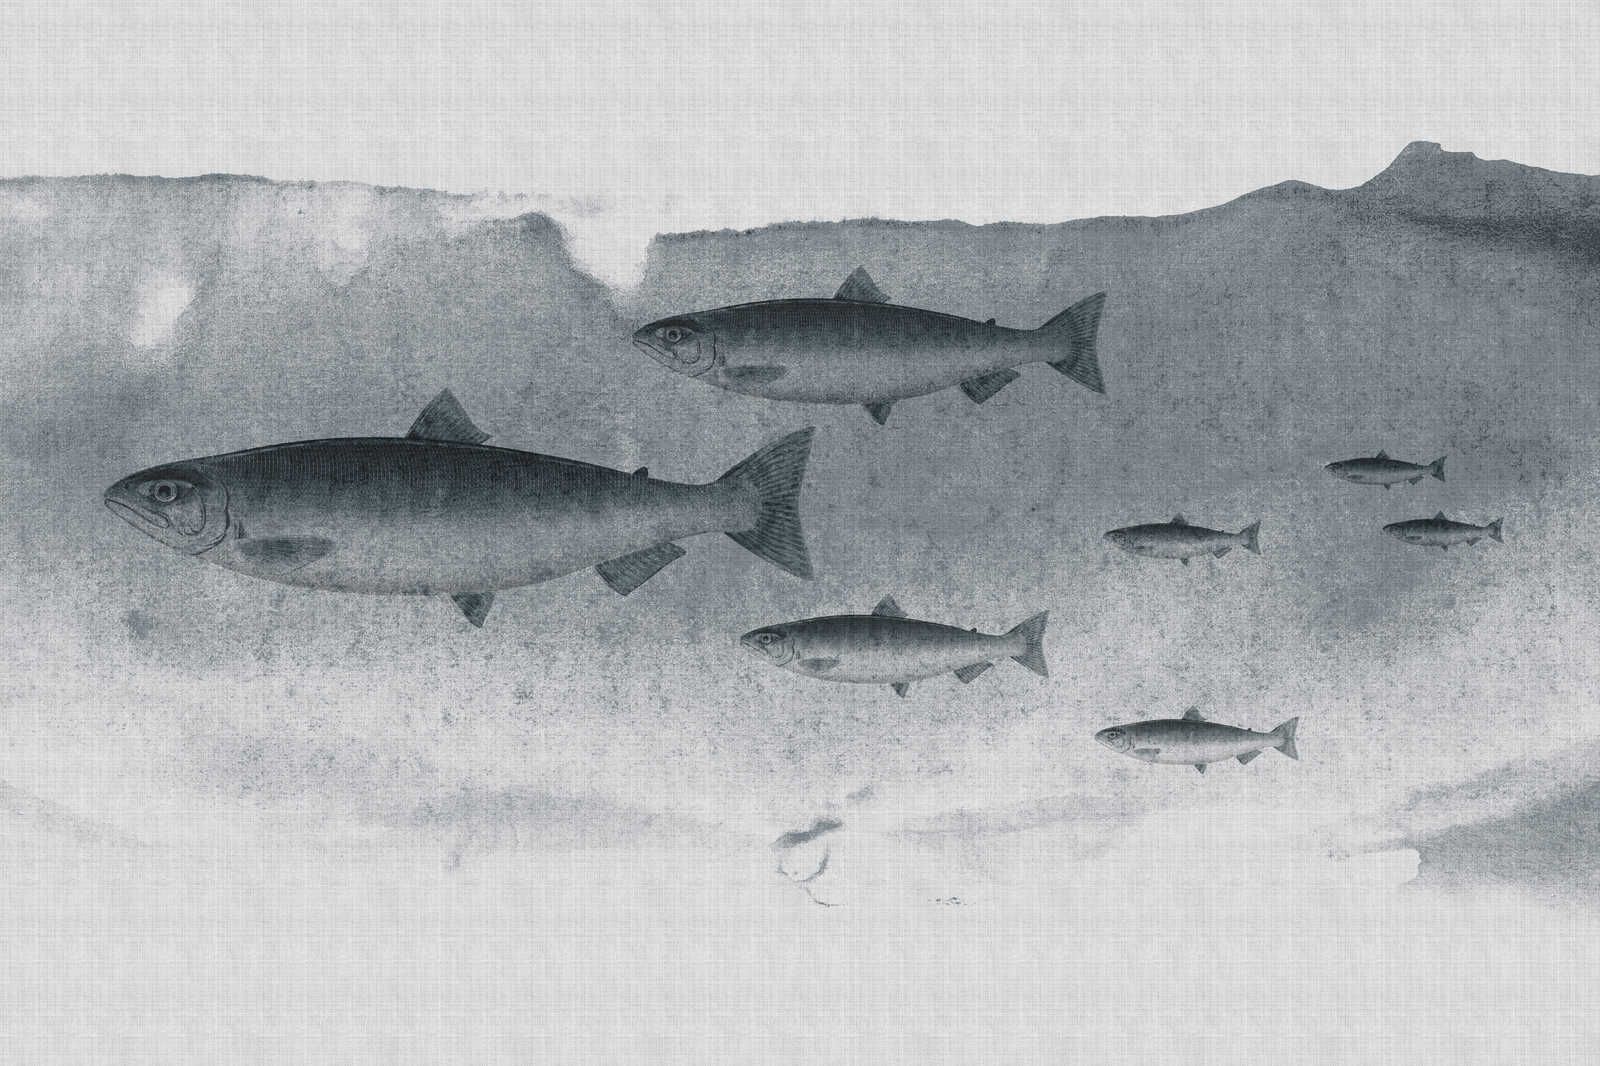             Into the blue 3 - Fisch Aquarell in Grau als Leinwandbild – 1,20 m x 0,80 m
        